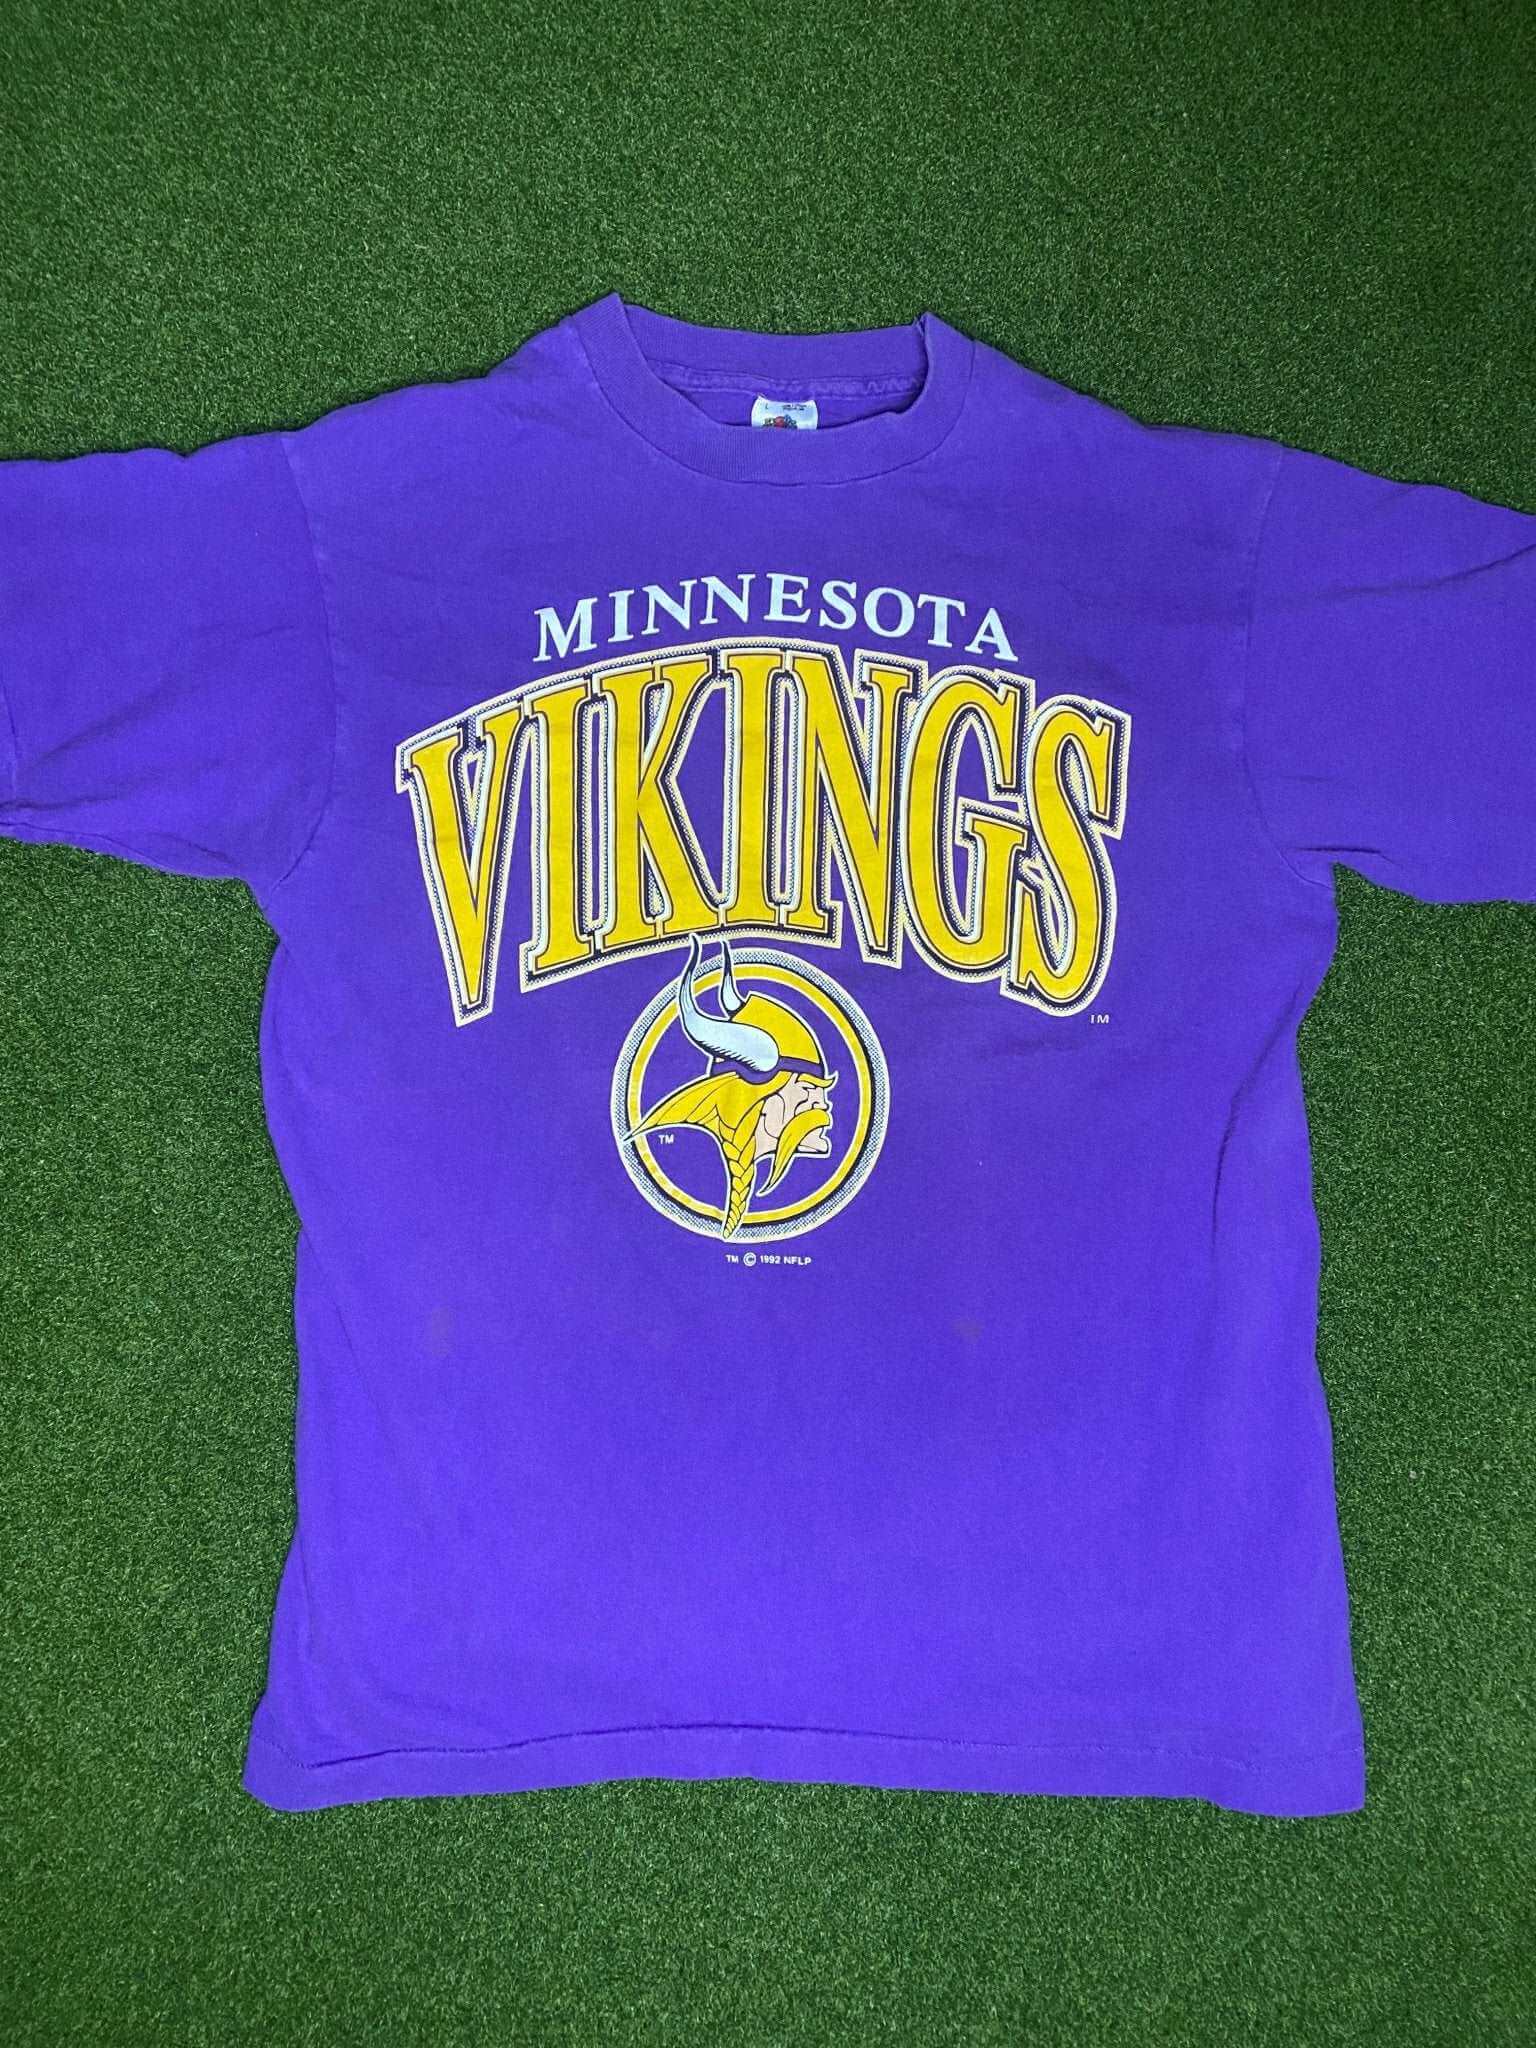 1992 Minnesota Vikings - Vintage NFL Tee Shirt (Large) – Gametime Vintage